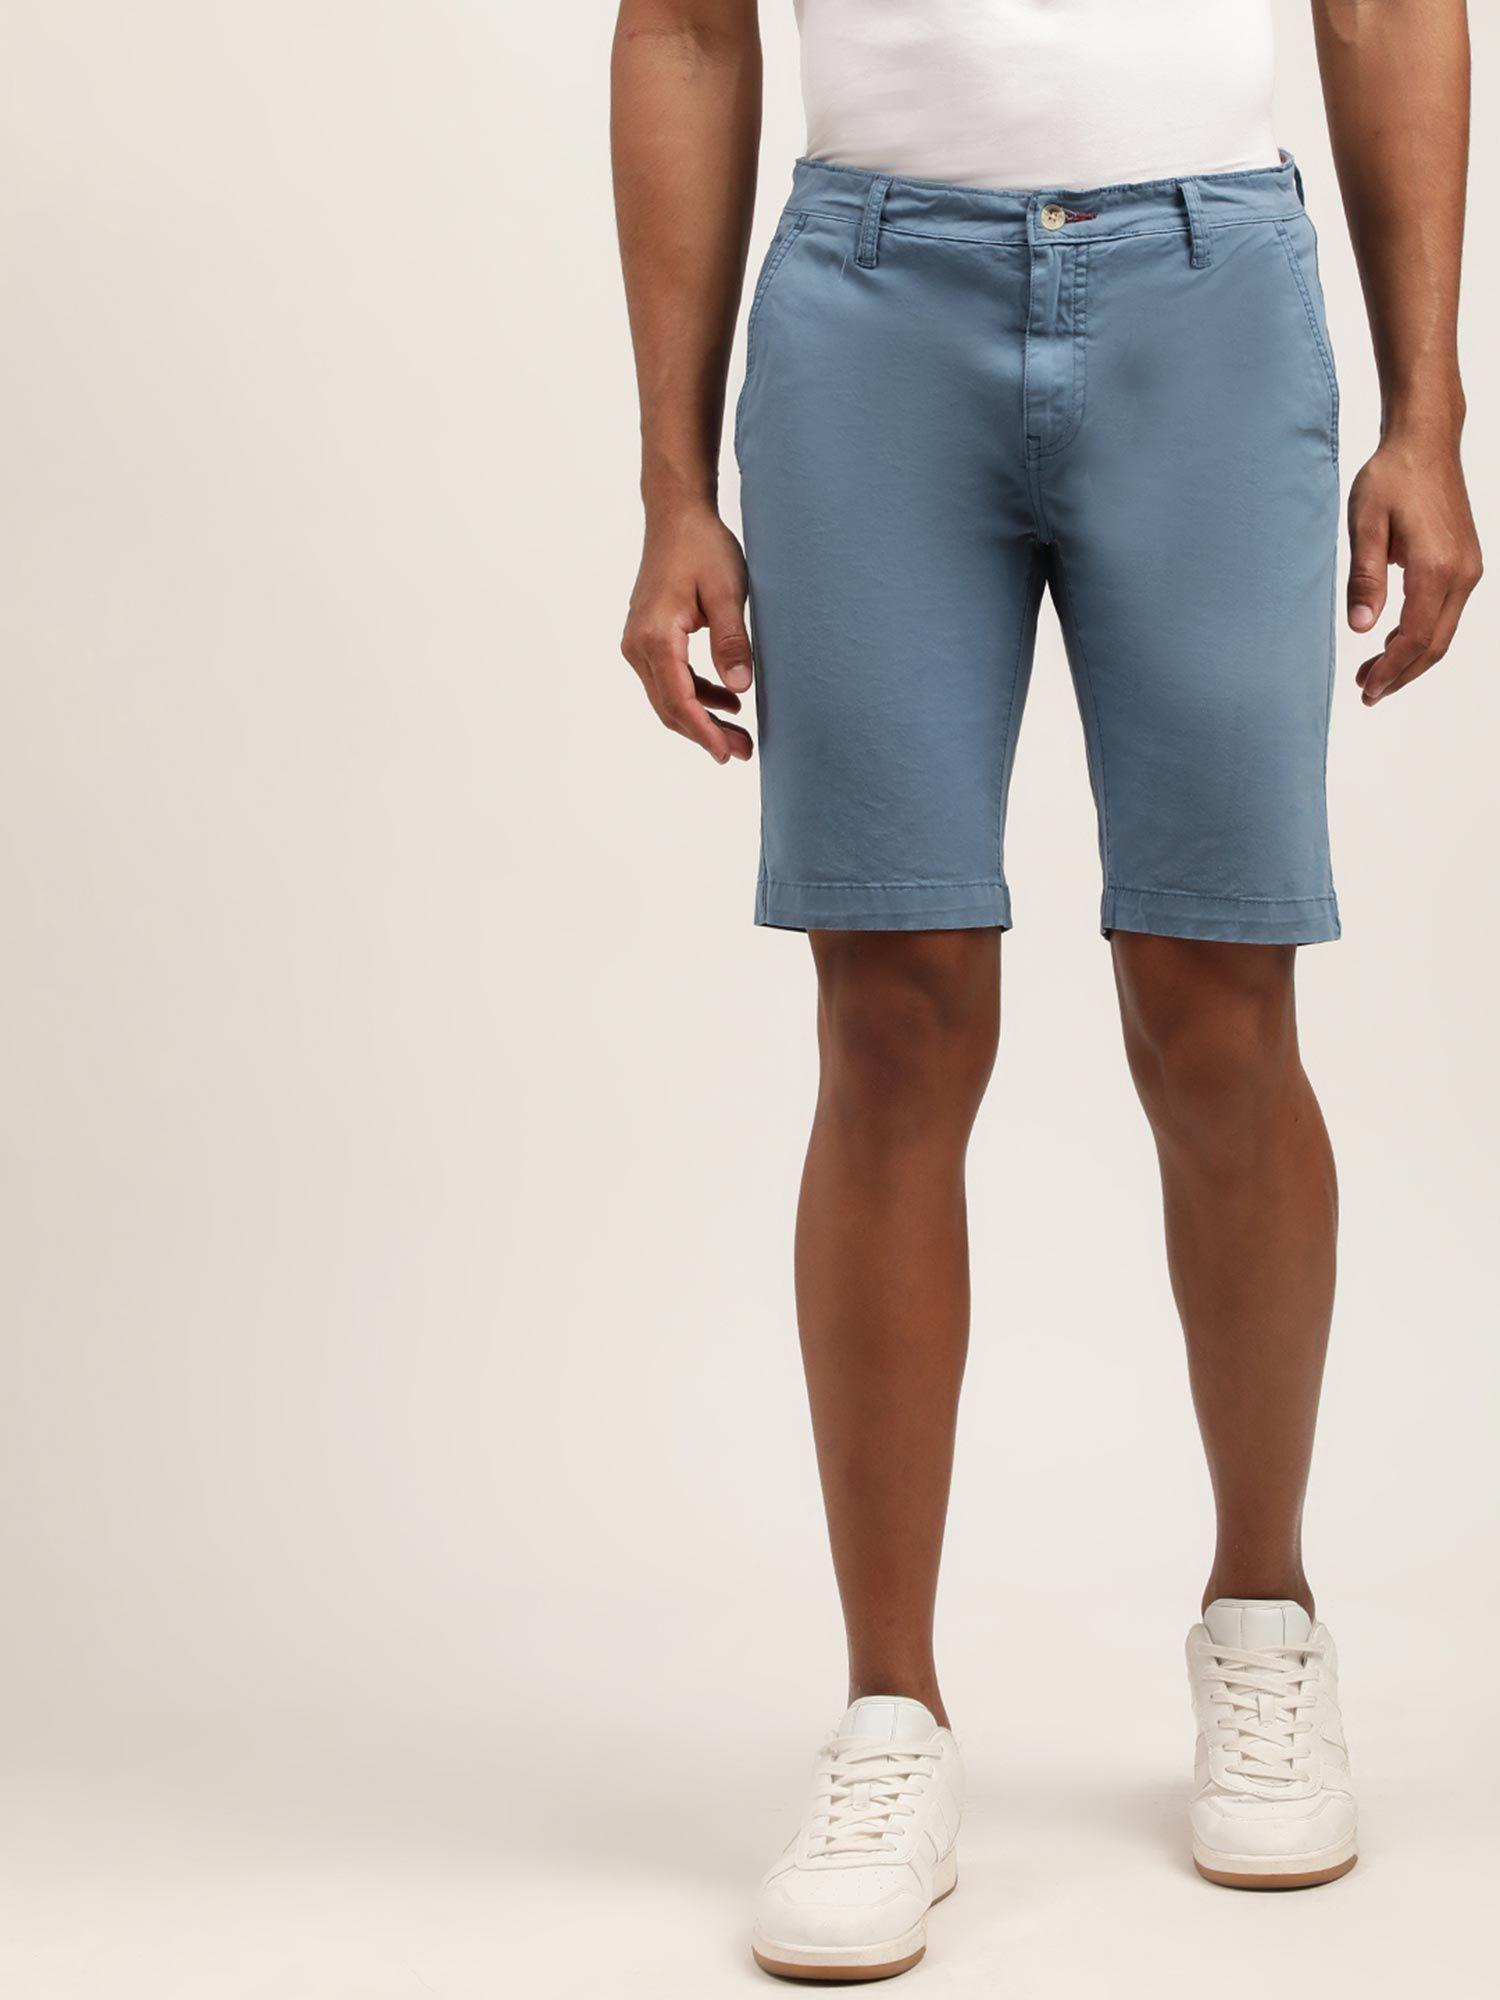 mens solid blue regular shorts